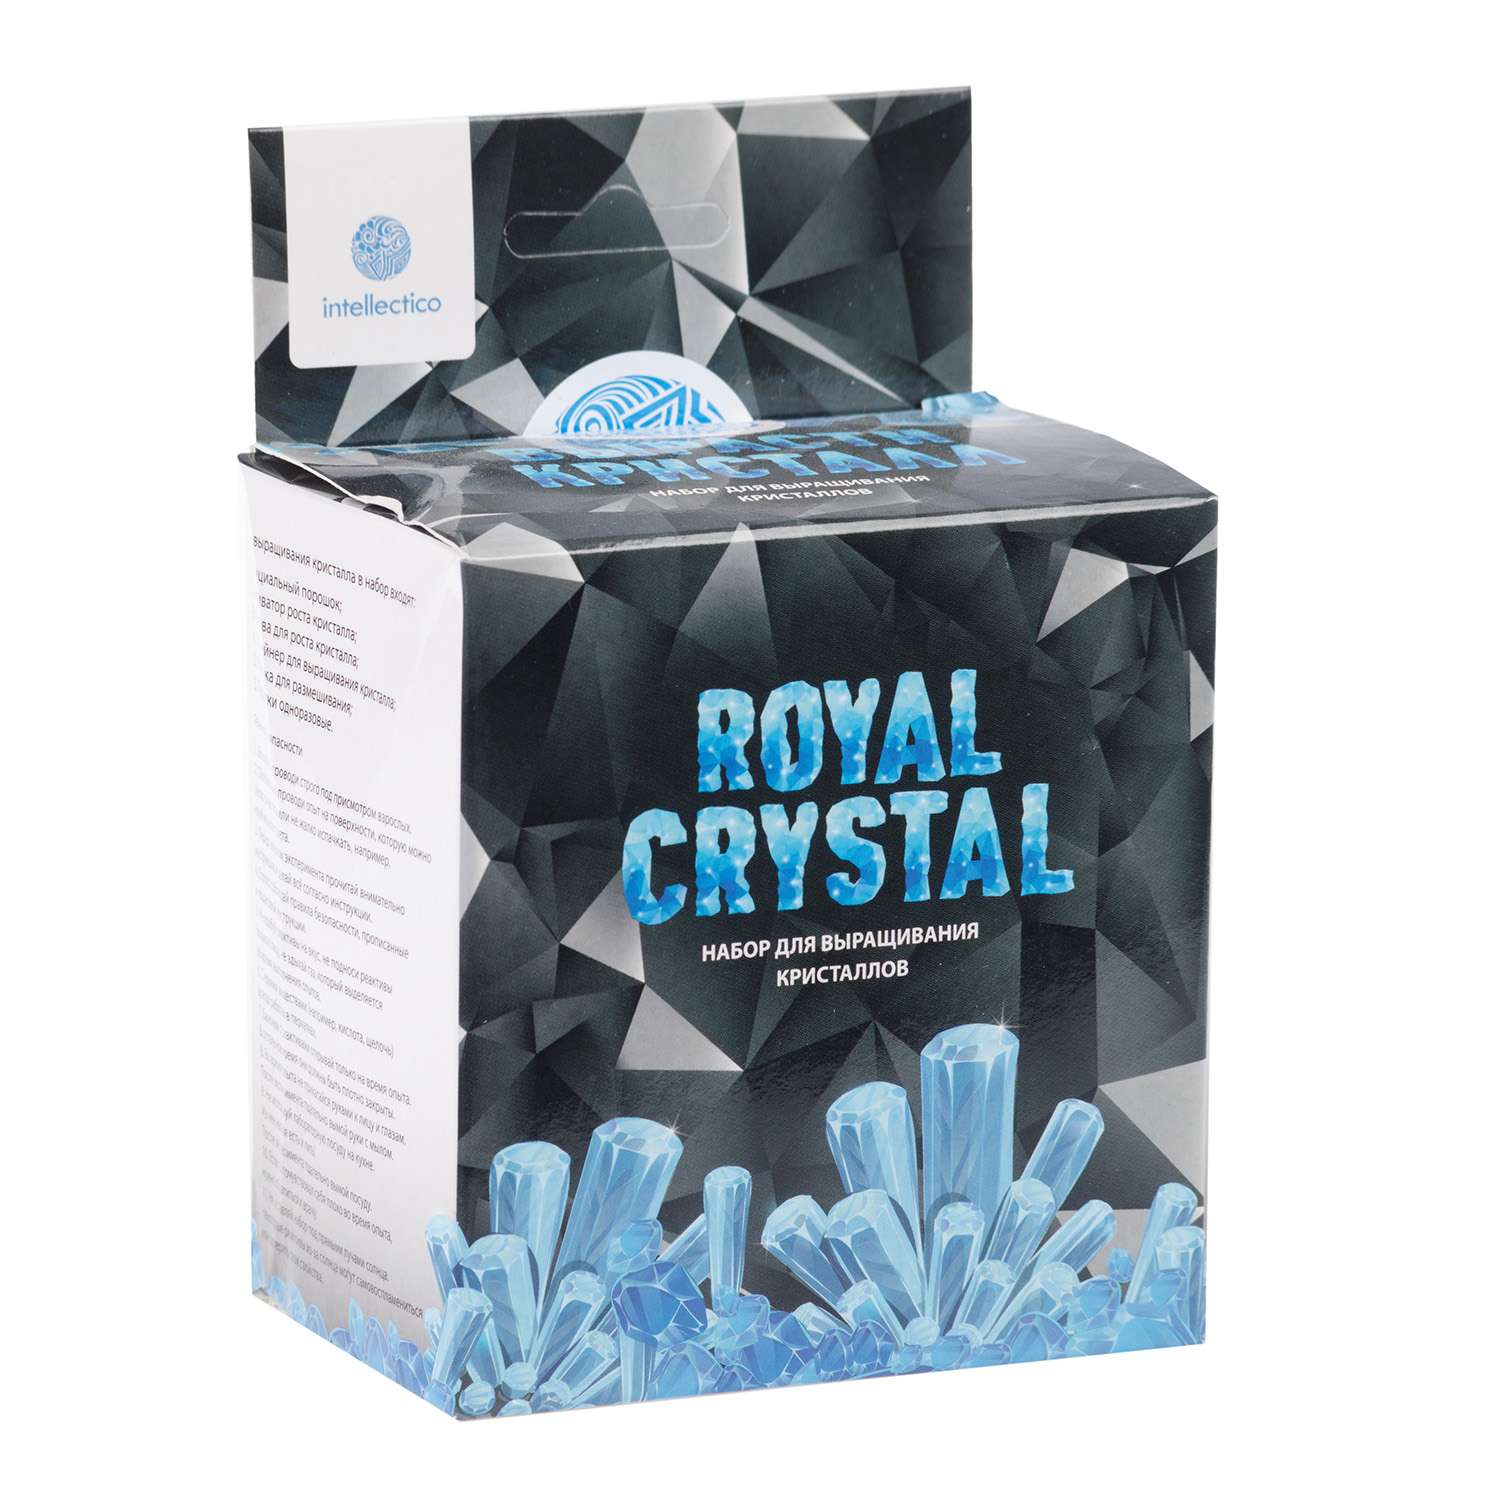 Набор для экспериментов intellectico Royal Grystal - фото 1